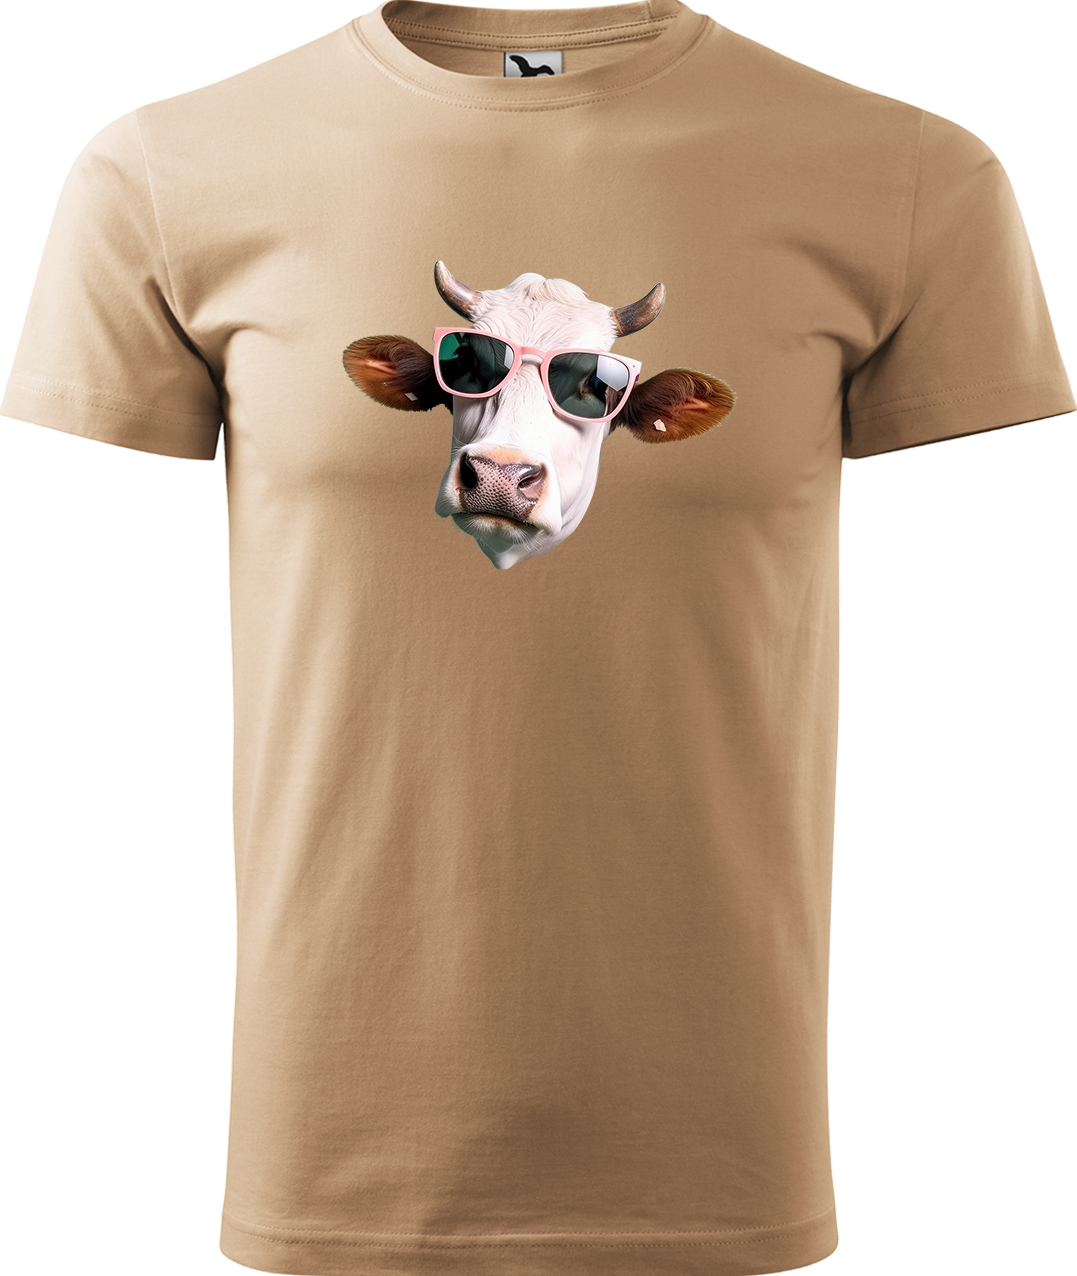 Pánské tričko s krávou - Kráva v brýlích Velikost: M, Barva: Písková (08), Střih: pánský